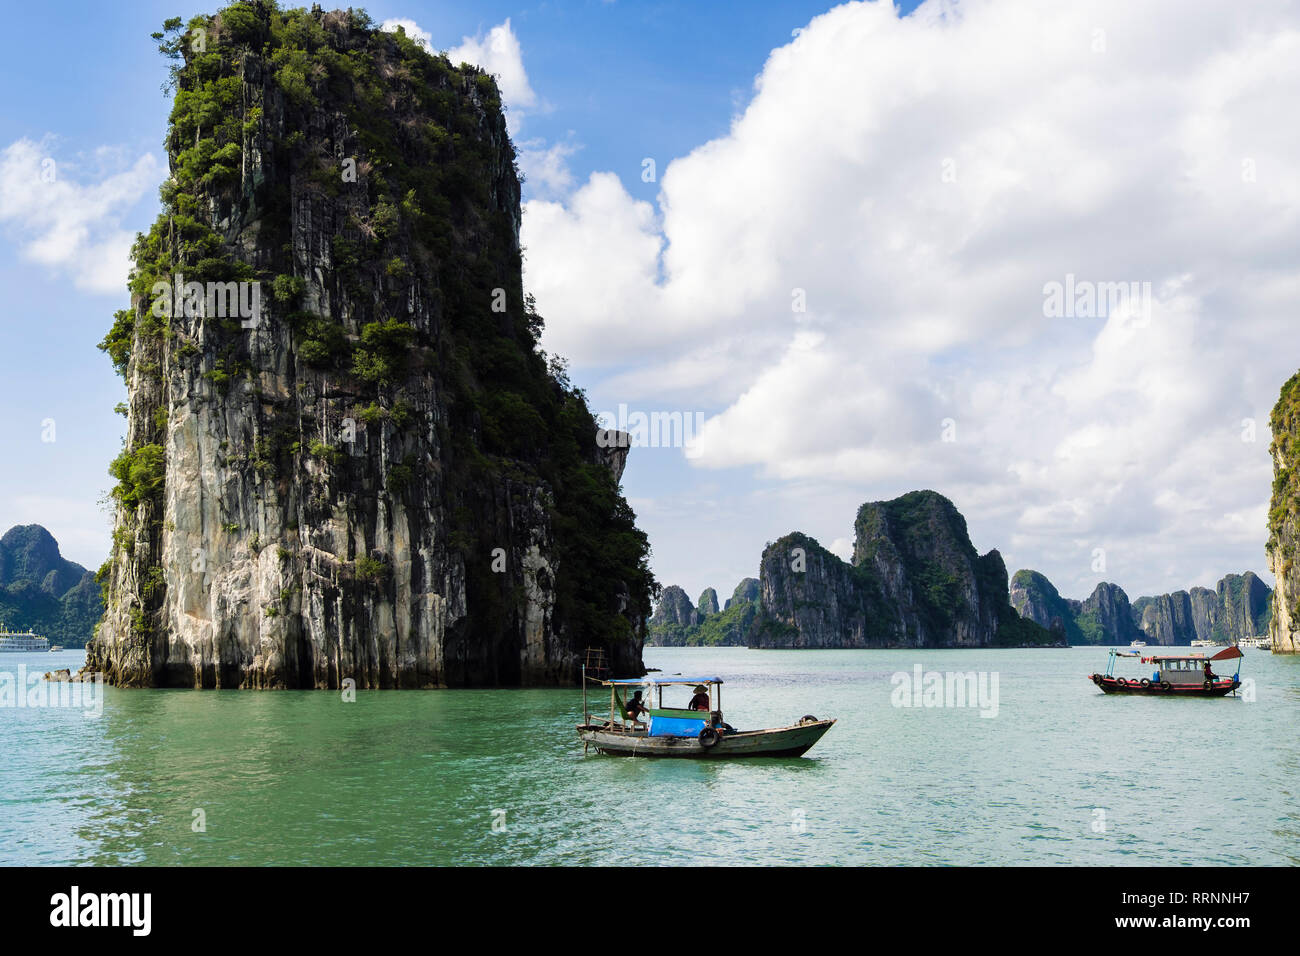 Traditionelle vietnamesische Fischerboote Segeln zwischen Kalkstein Inseln in Ha Long Bucht im Südchinesischen Meer. Quảng Ninh, Vietnam, Südostasien Stockfoto